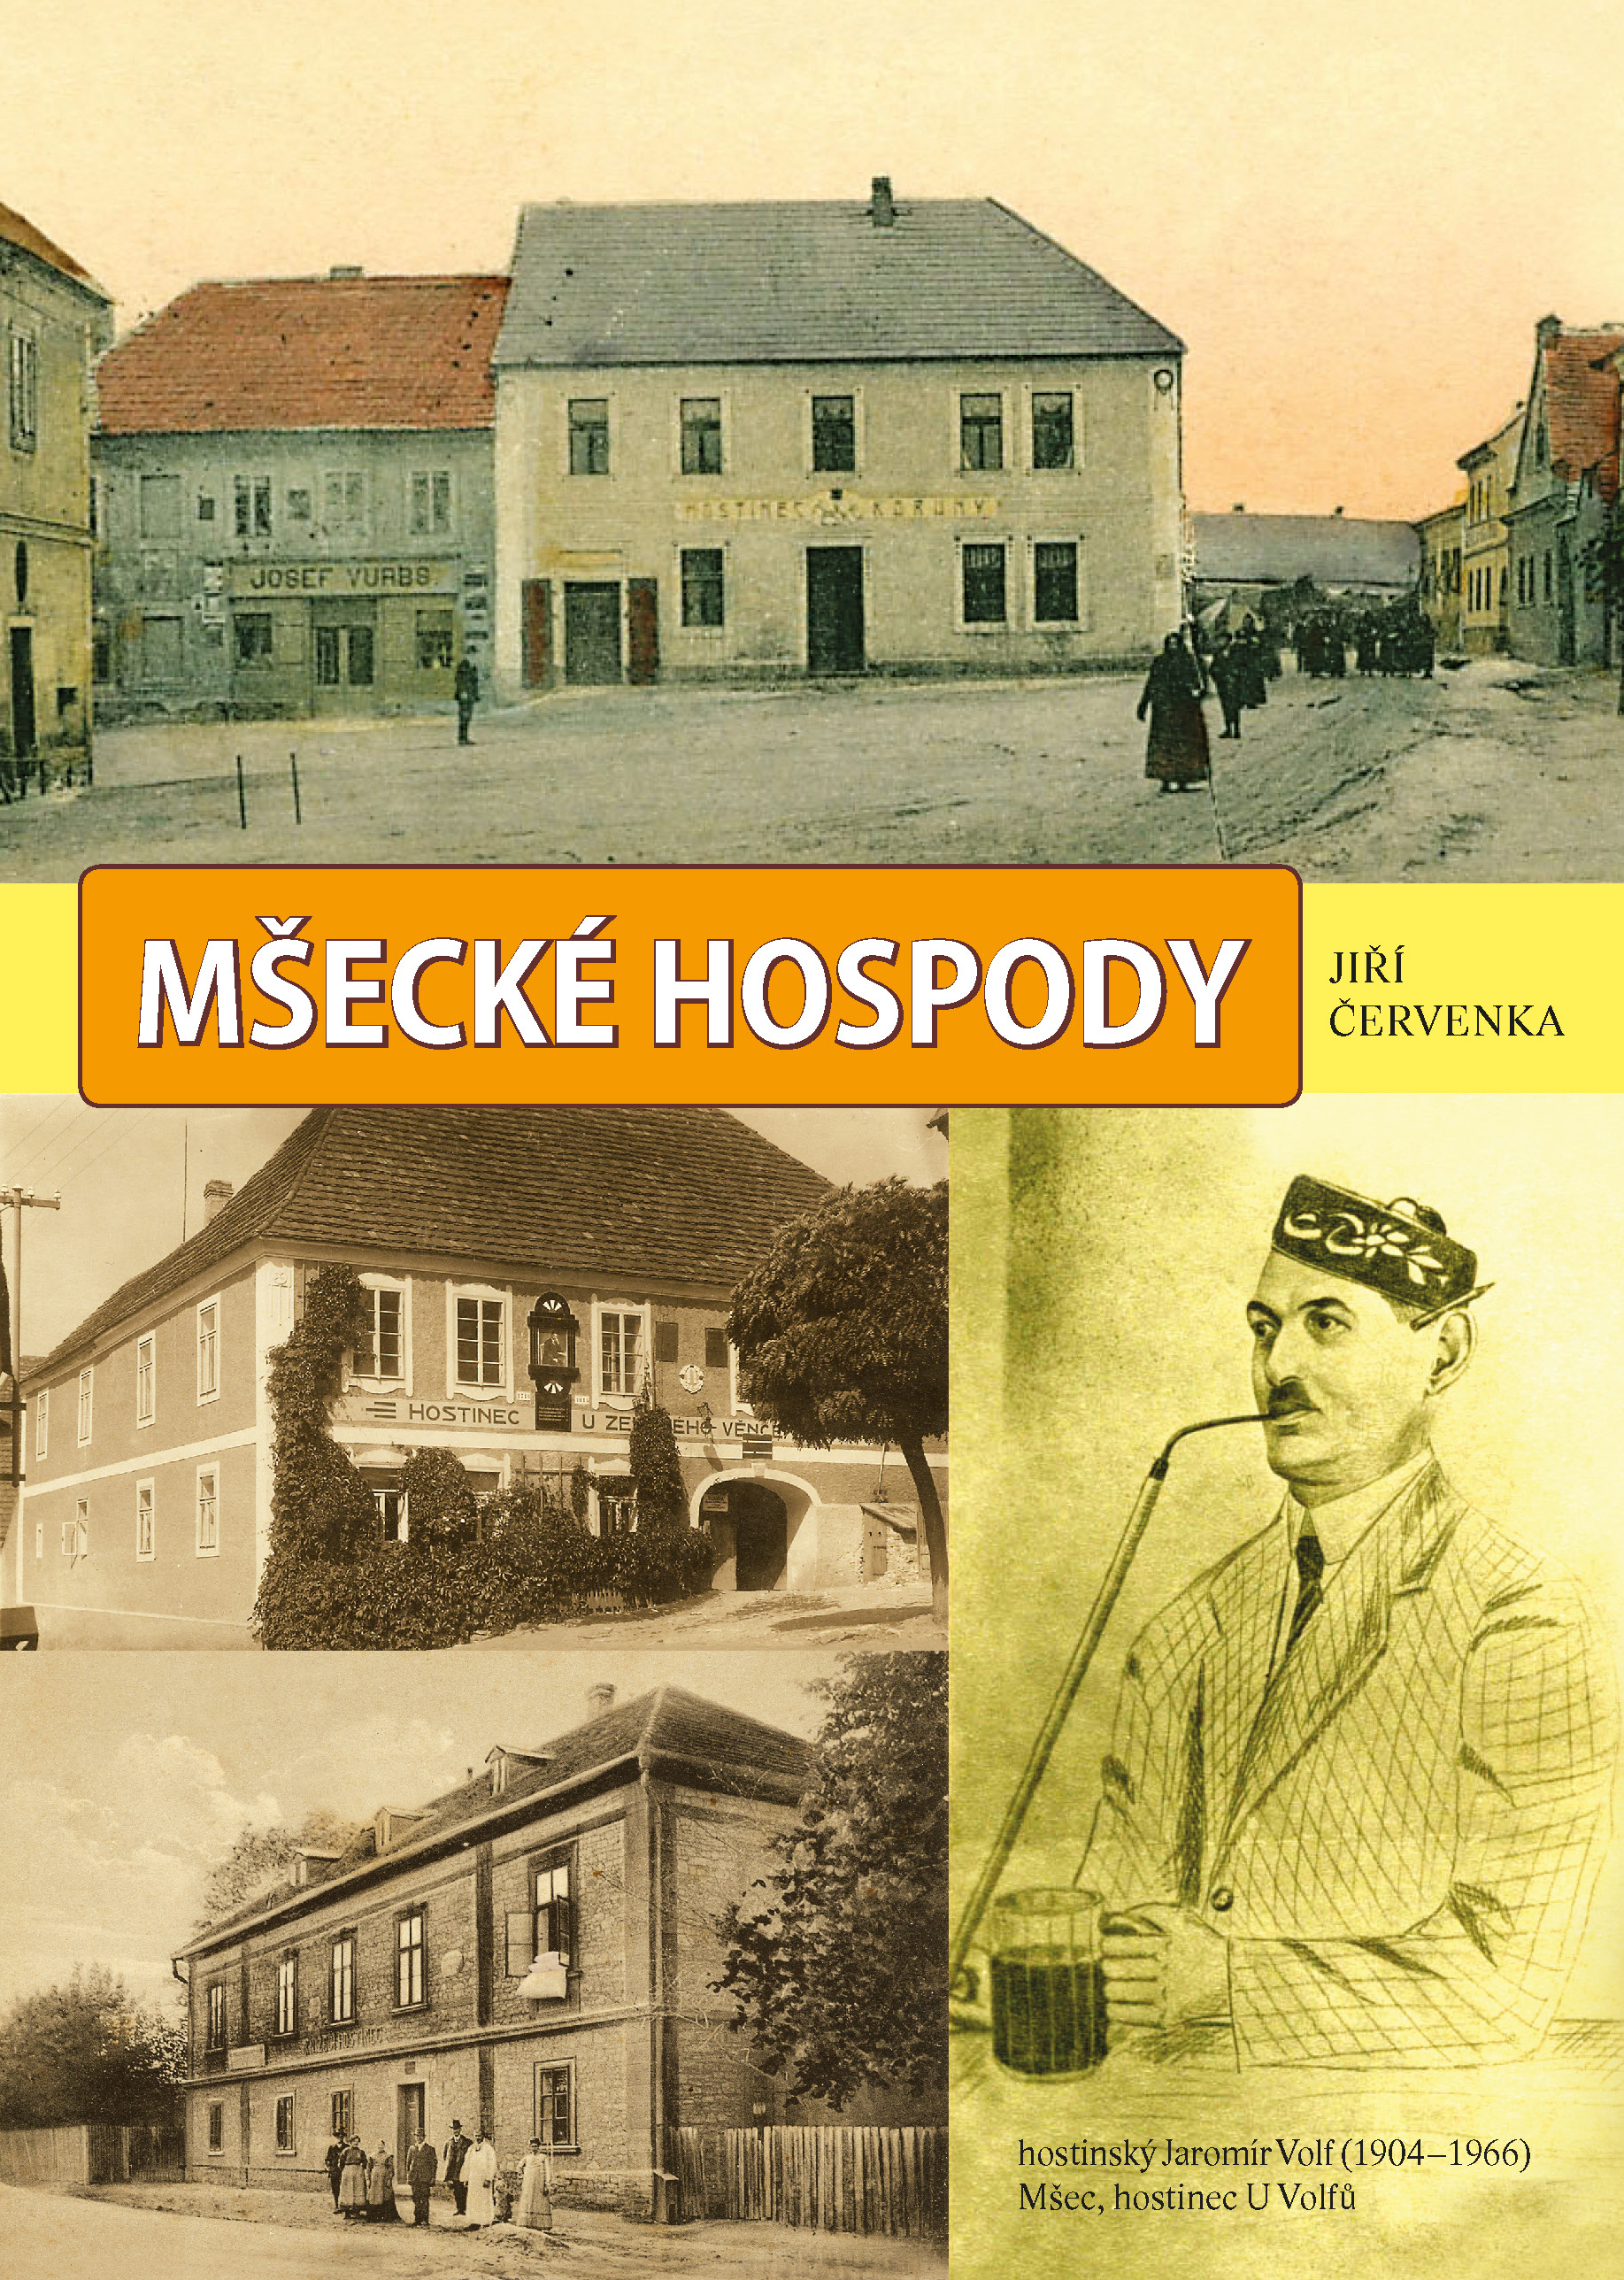 Msecke-hospody